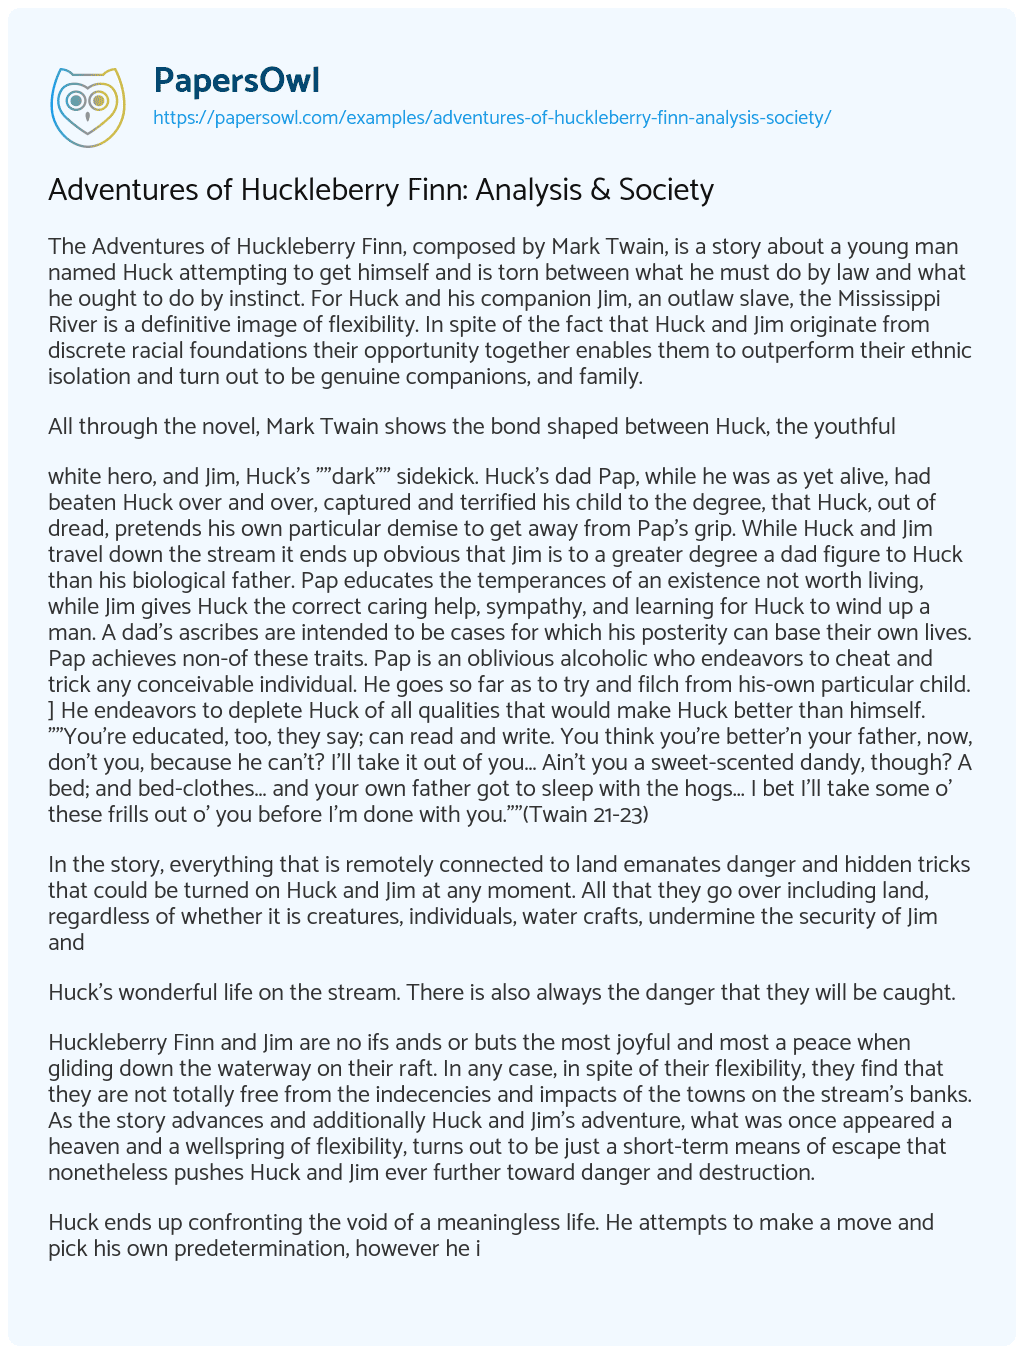 Adventures of Huckleberry Finn: Analysis & Society essay